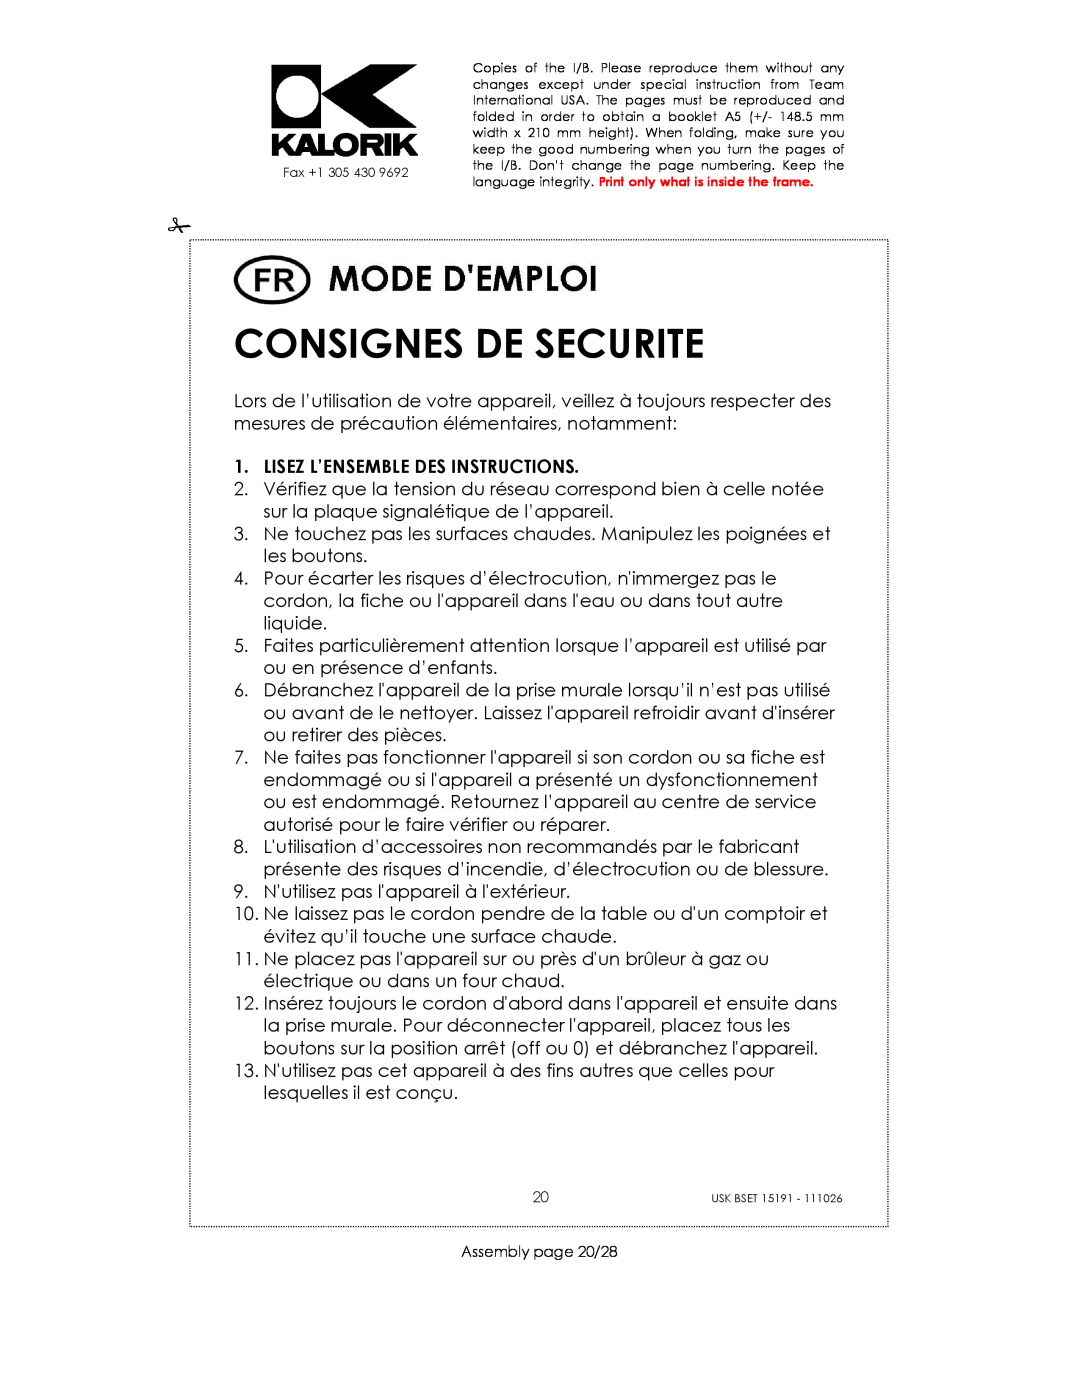 Kalorik USK BSET 15191 manual Consignes De Securite, Lisez L’Ensemble Des Instructions 